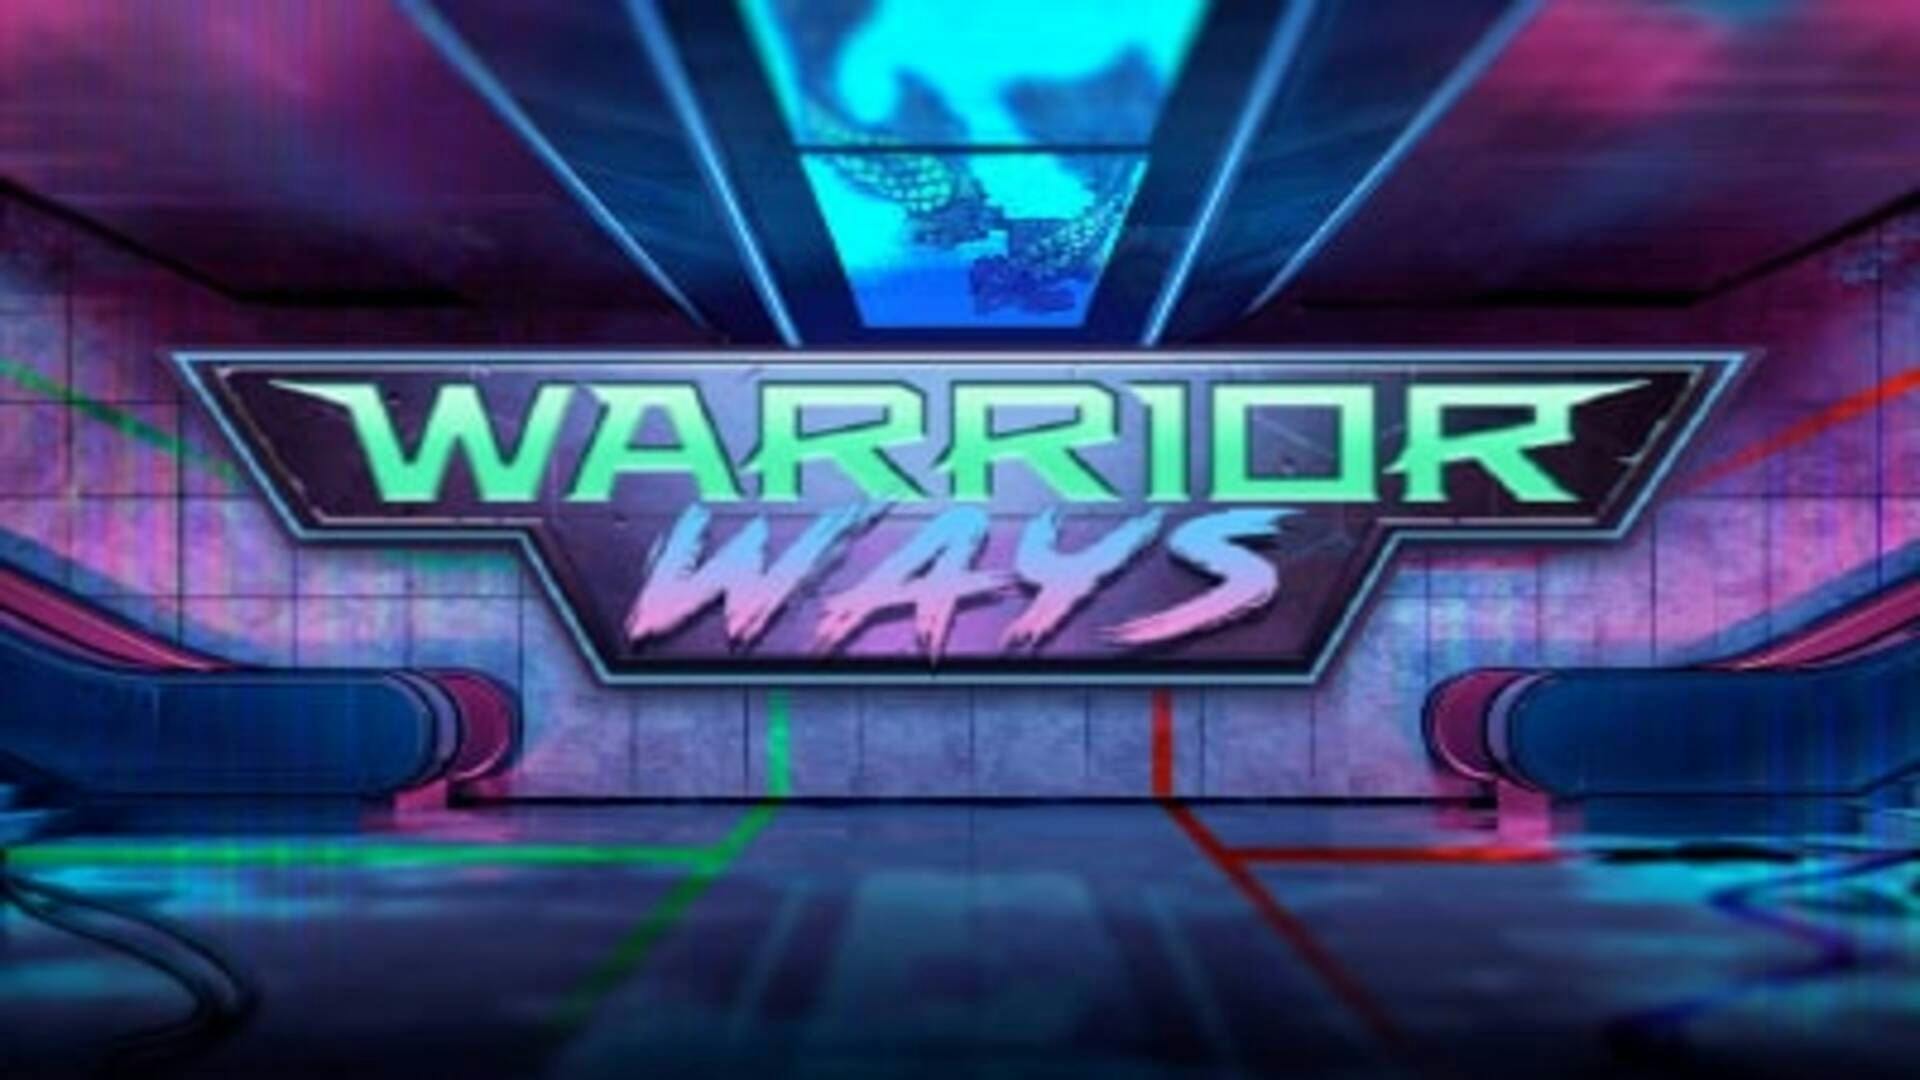 Warrior Ways Slot Machine Online Free Game Play